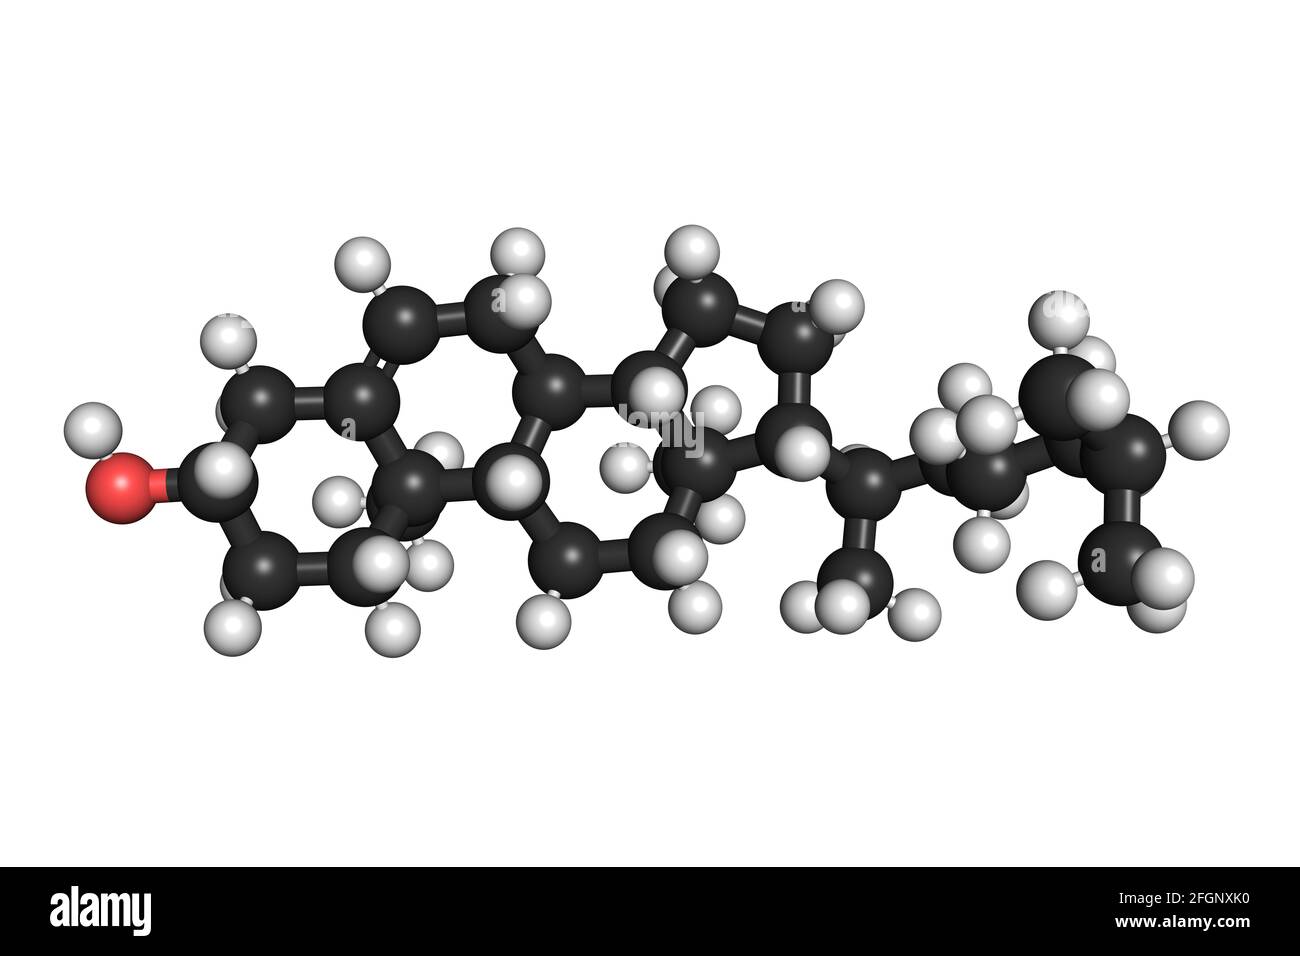 La molecola di colesterolo lipide organica 3D rende la struttura chimica Foto Stock